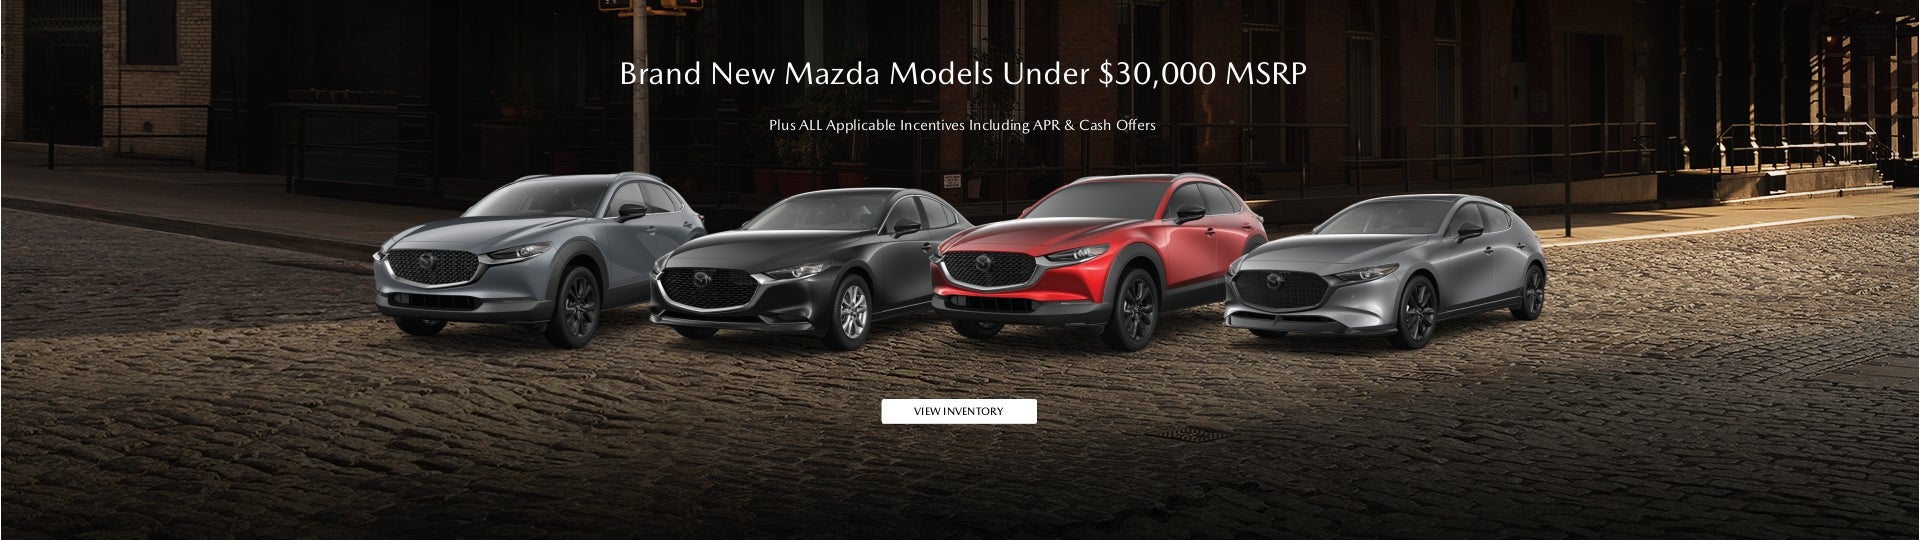 New Mazda under $30k